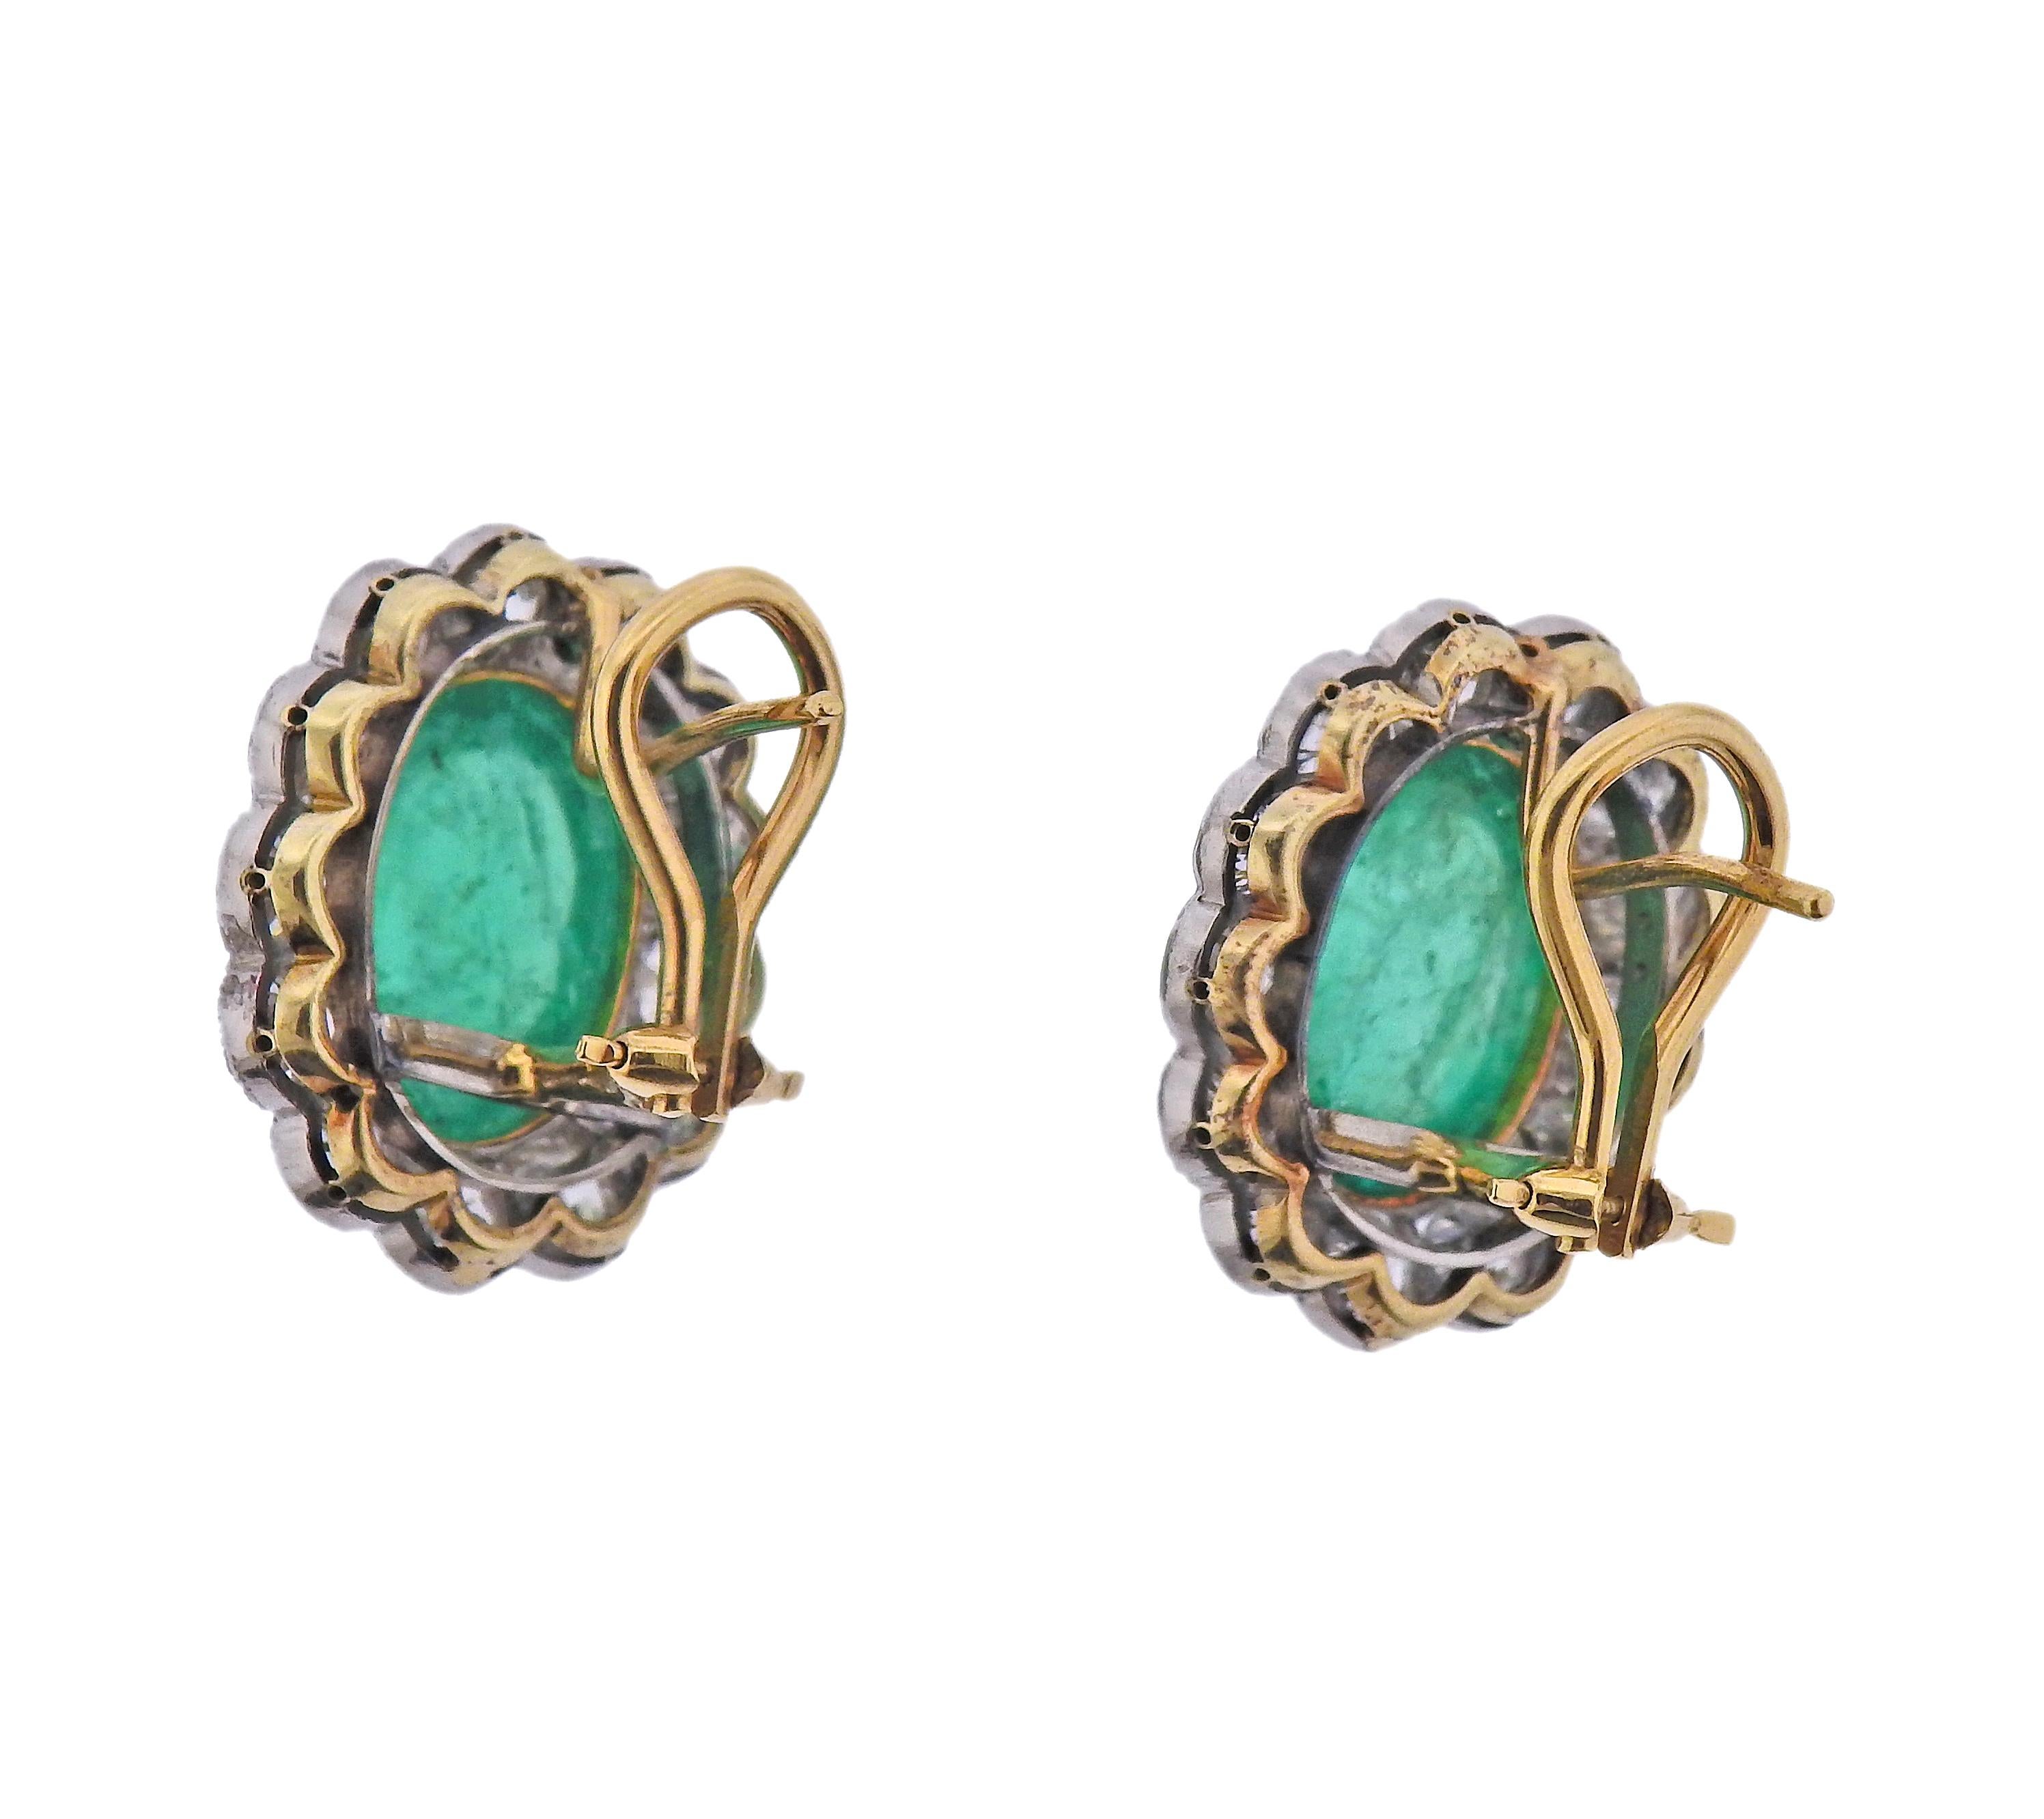 Paar antike Edwardian Ära, circa 1910 18k Gold Ohrringe, mit Zentrum oval Smaragd Cabochons - insgesamt ca. 12cts für beide Steine, Jeder Stein misst ca. 12,5 x 9,8 x  6,2 mm. Diamanten ca. 5,20ctw in alten Minenschliff Diamanten. Die Brosche ist 21